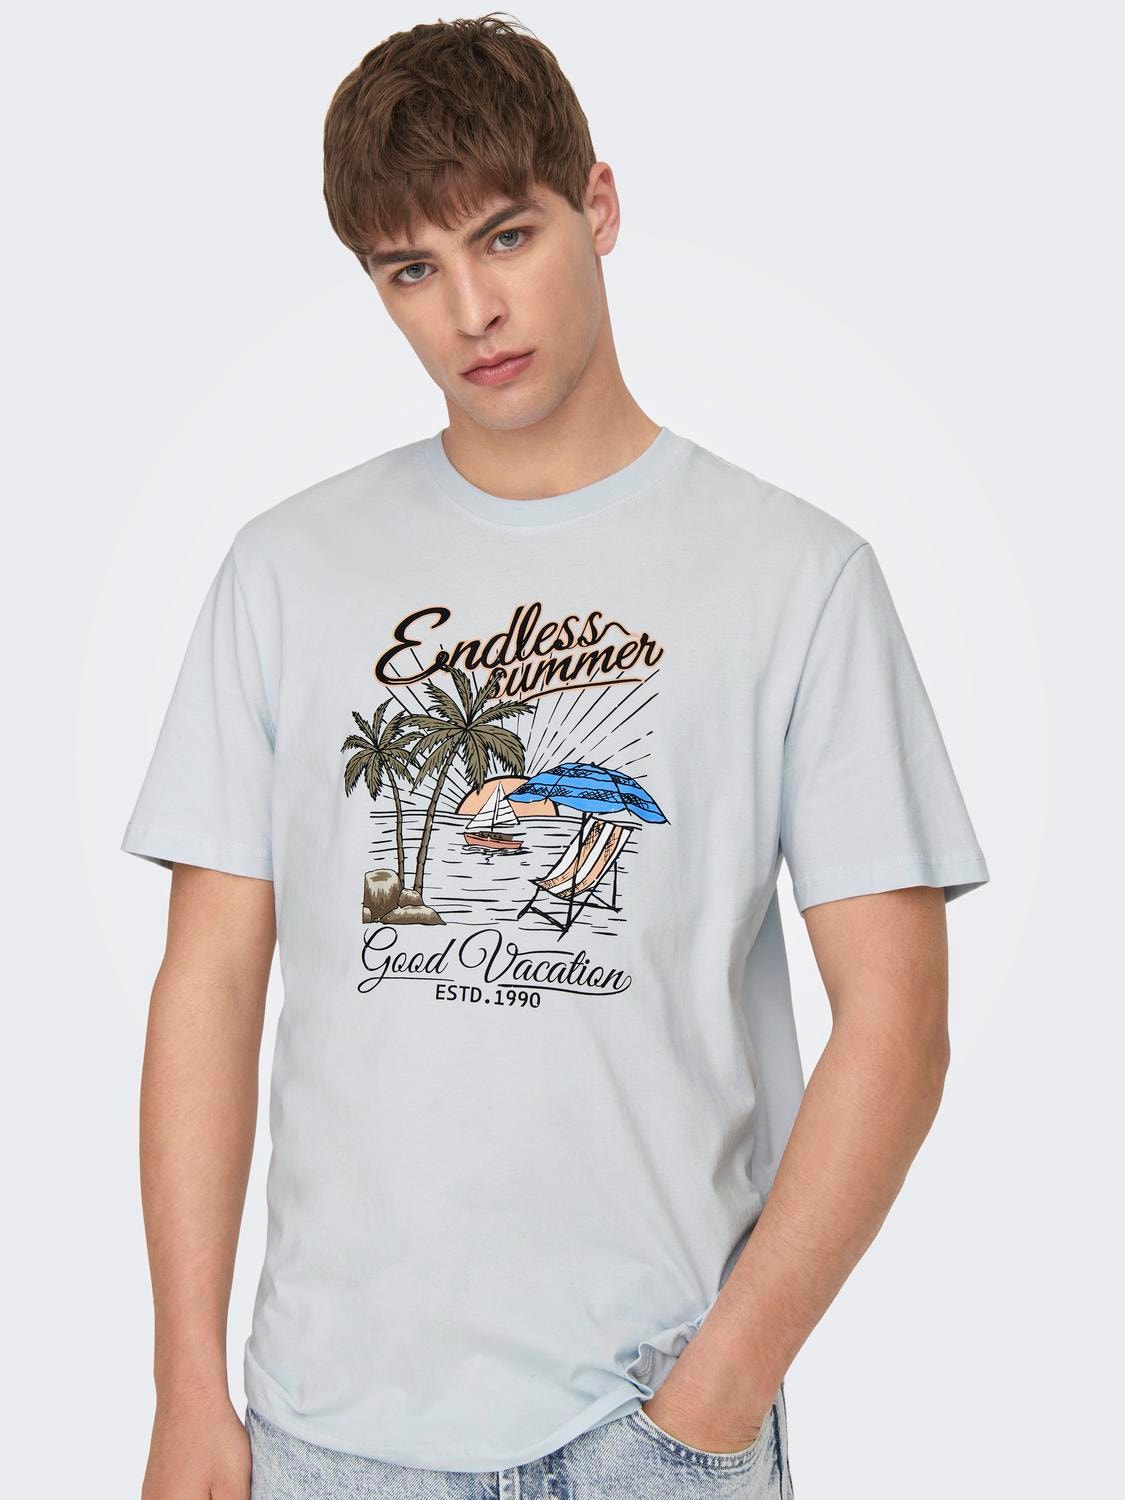 ONLY & SONS Camisetas Corte regular Cuello redondo -Plein Air - 22026084